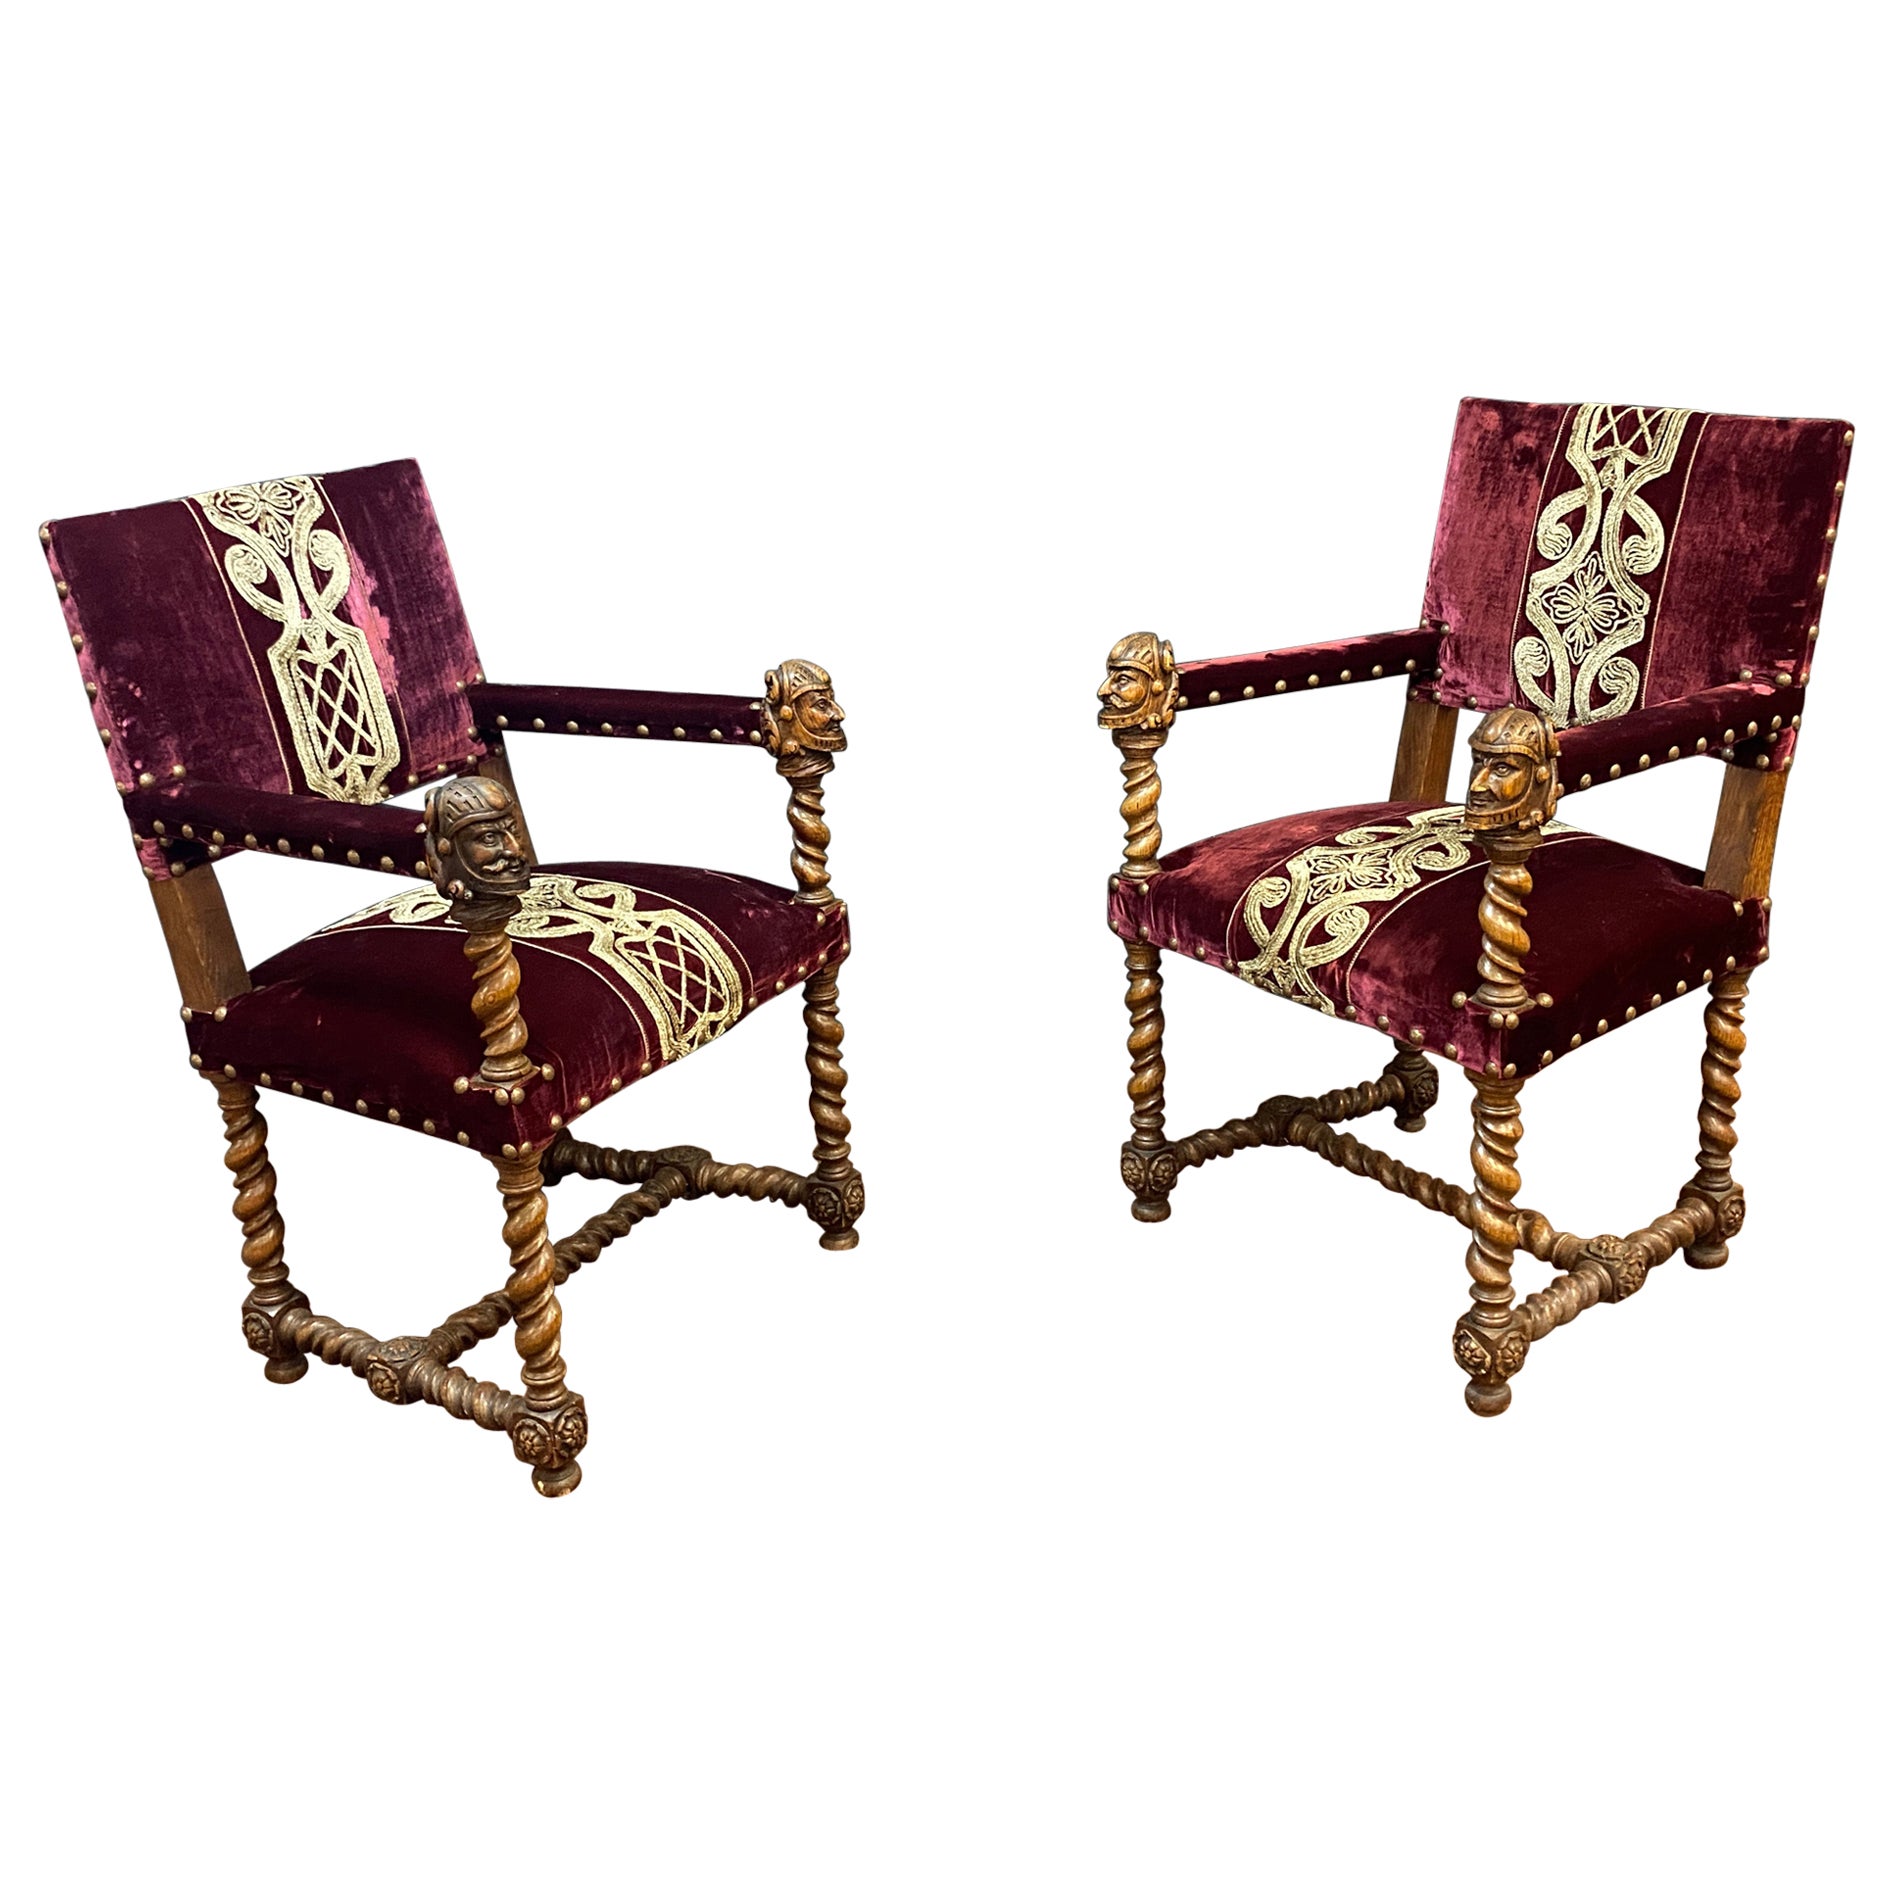 Paire de fauteuils originaux de style Louis XIII en chêne vers 1930, tissu neuf